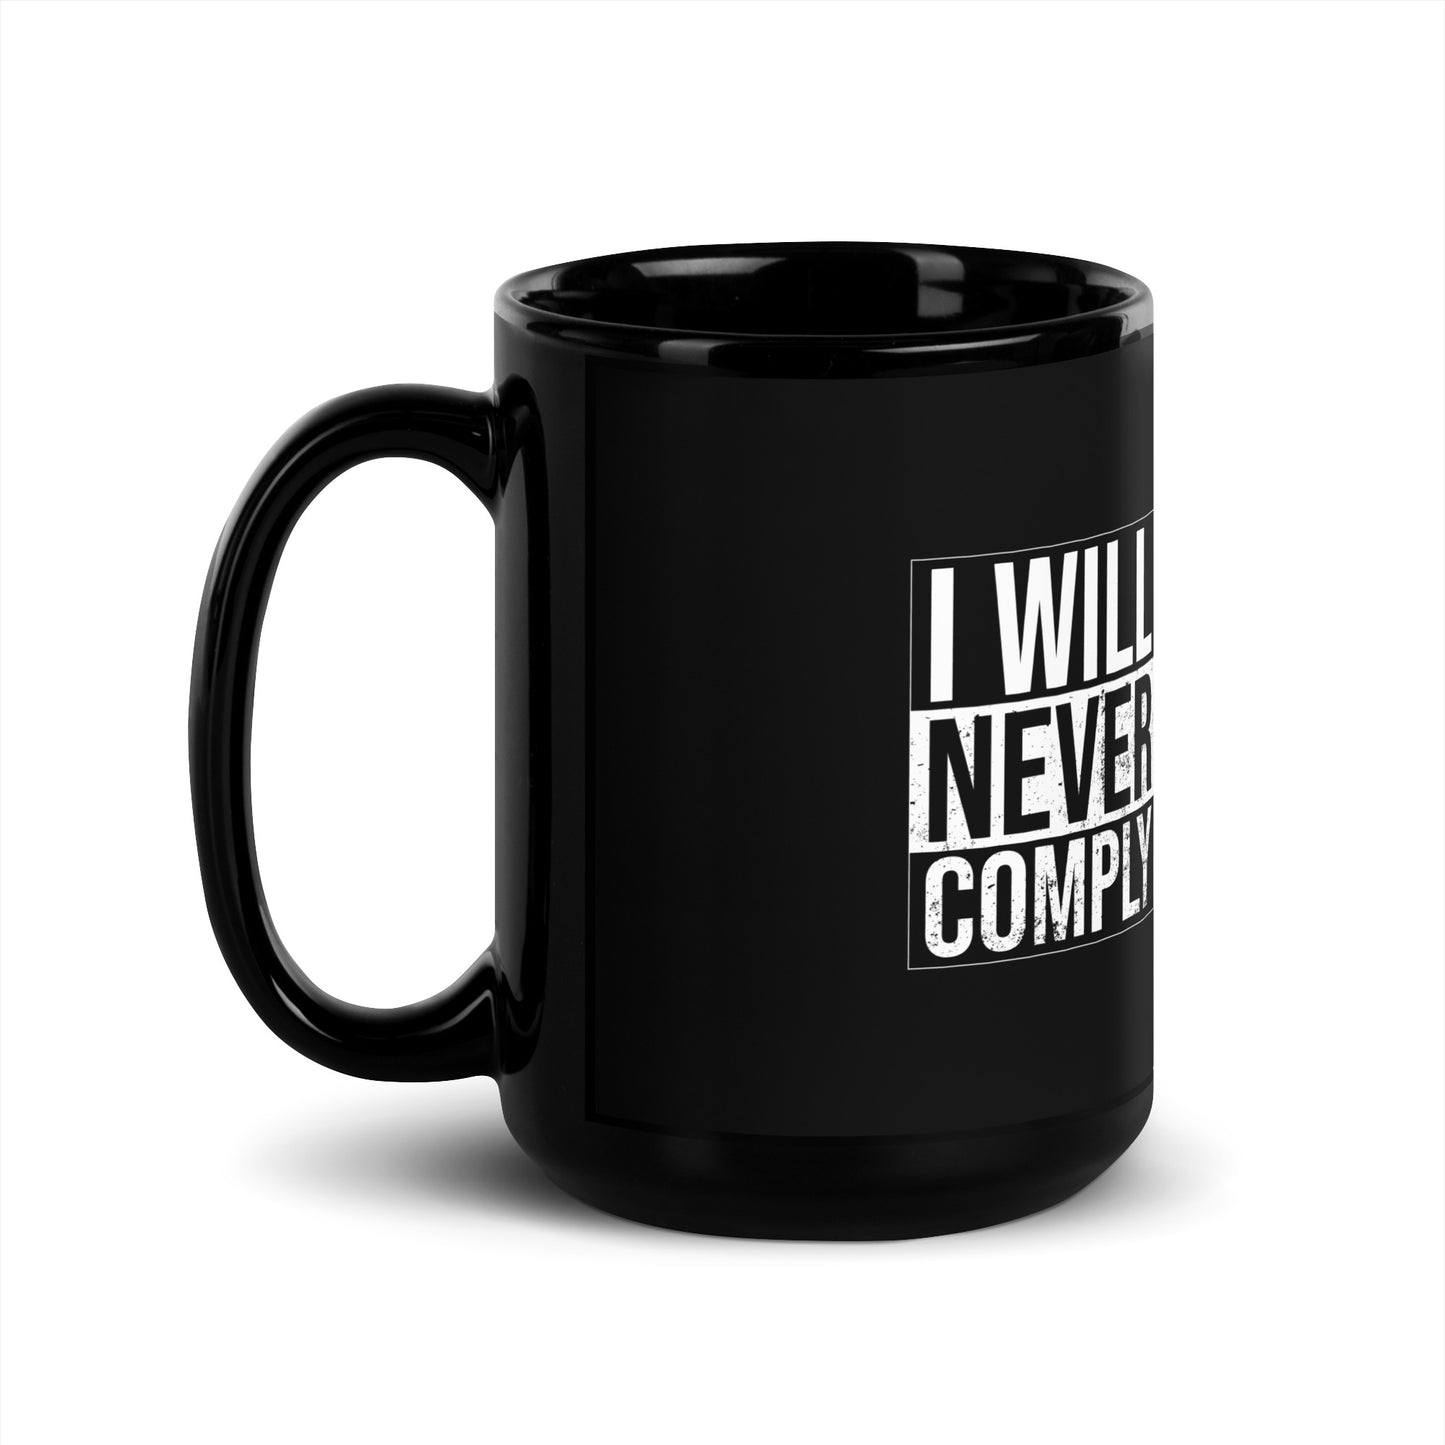 NEVER COMPLY Black Glossy Mug